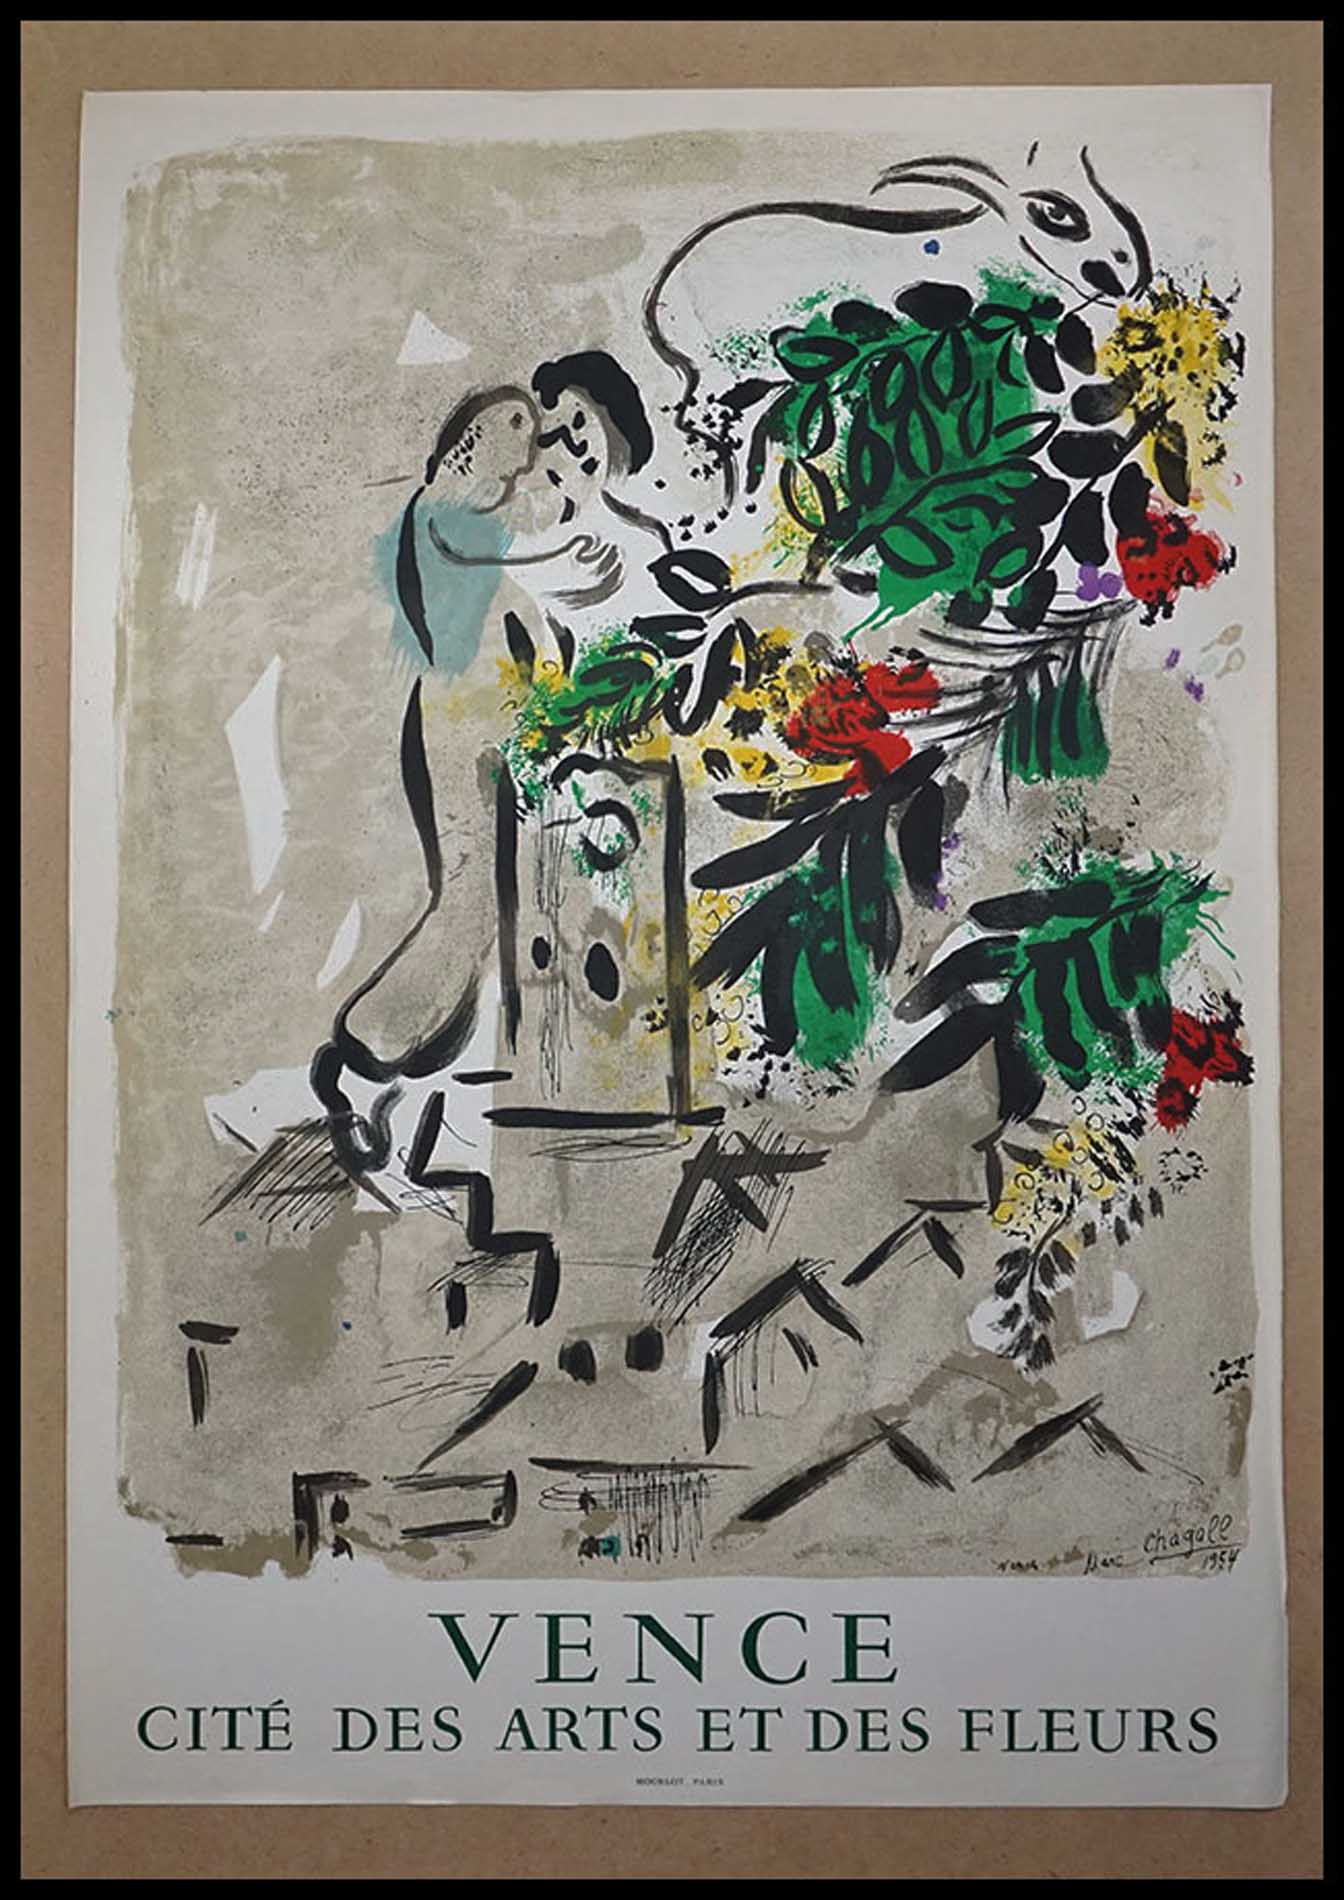 Marc Chagall, Cite des Arts et des Fleurs, Vence